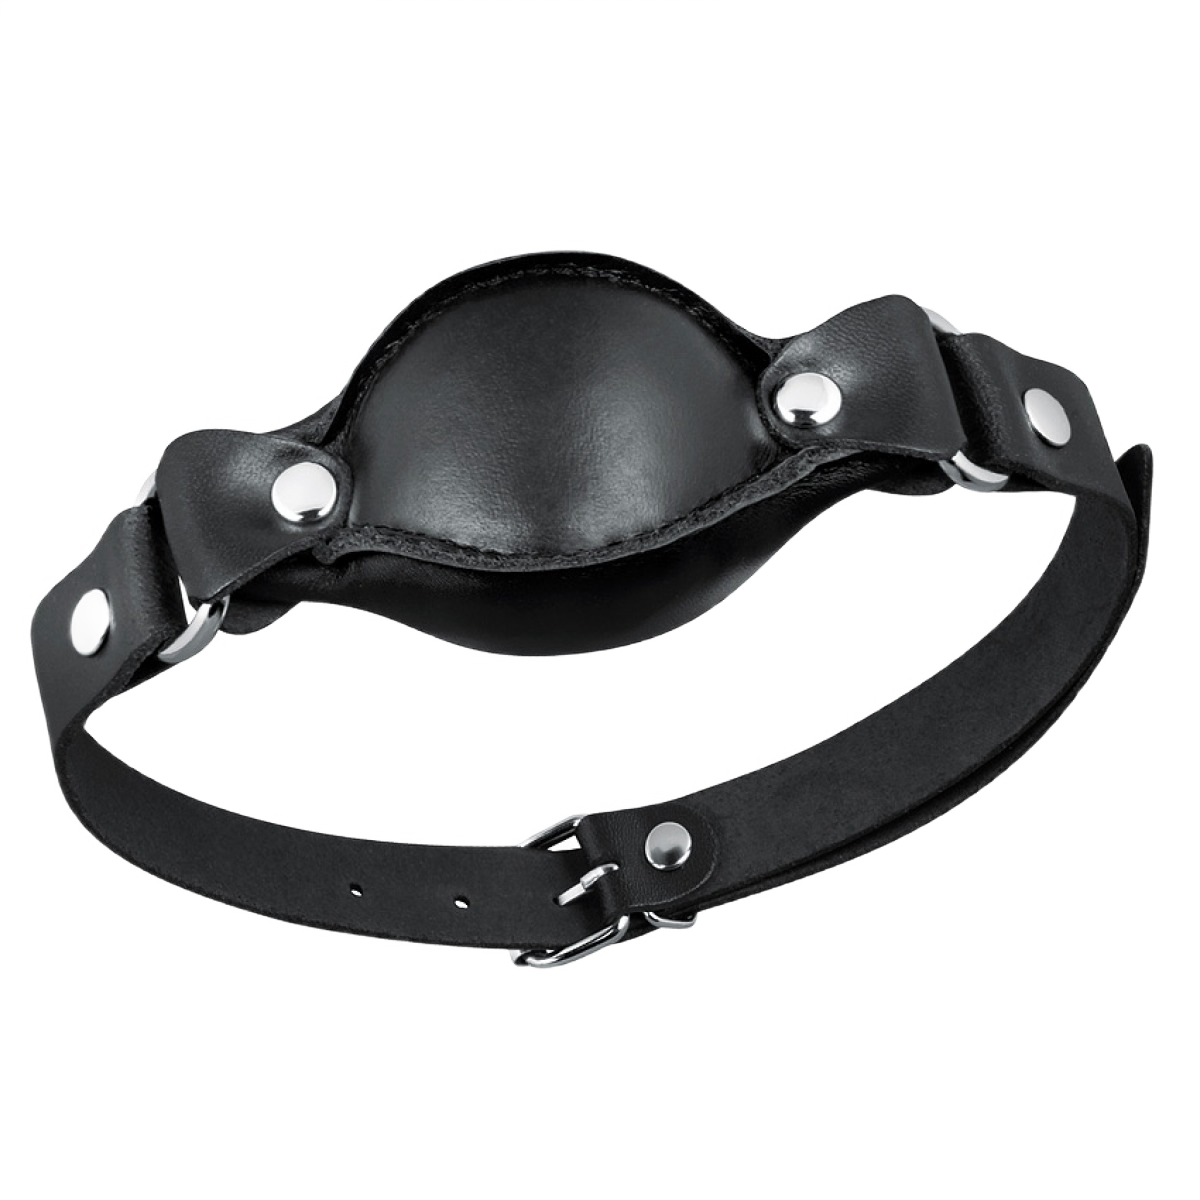 Кляп Notabu BDSM Real Leather кожаный, мягкий, черный